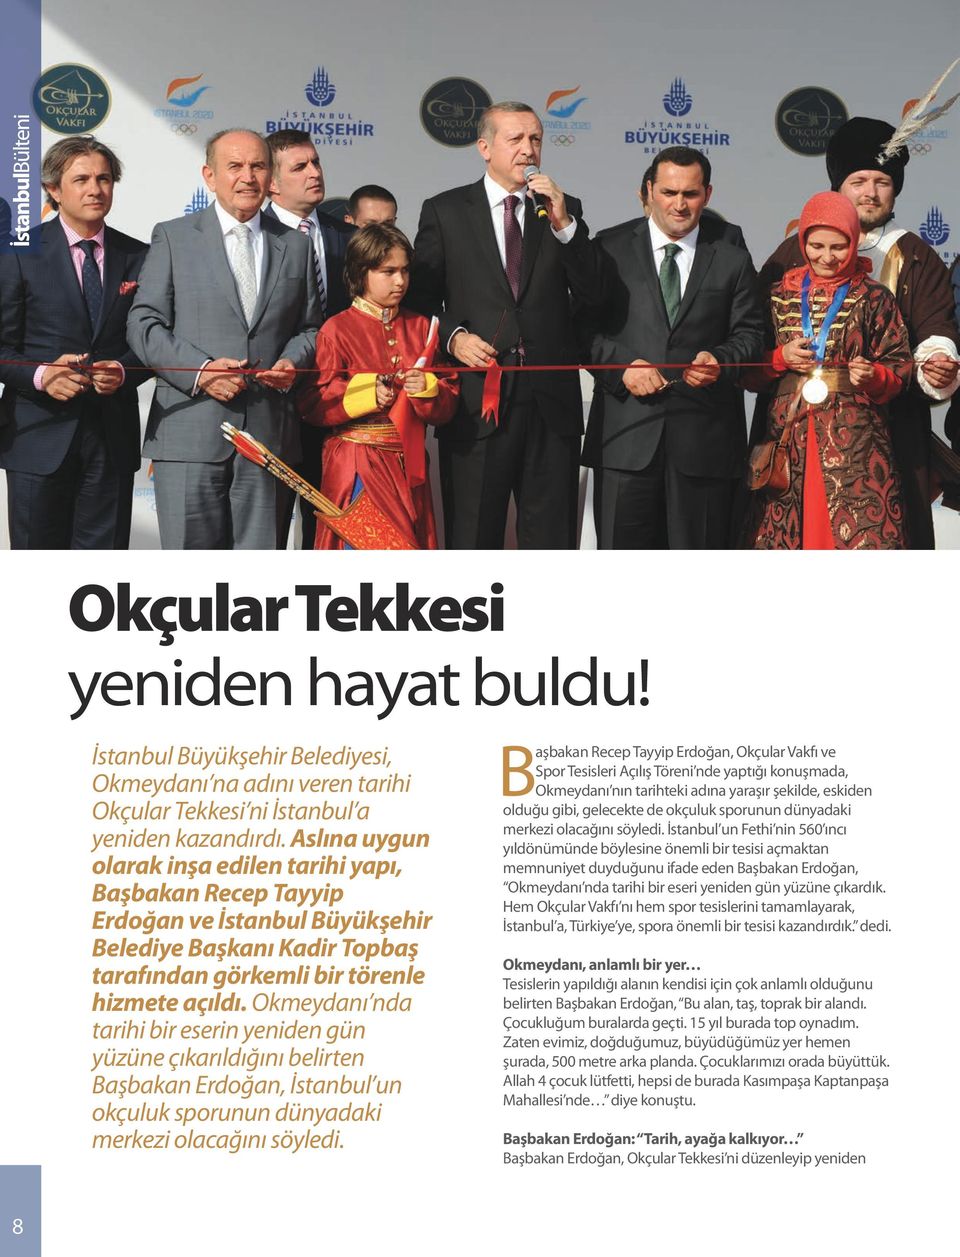 Okmeydanı nda tarihi bir eserin yeniden gün yüzüne çıkarıldığını belirten Başbakan Erdoğan, İstanbul un okçuluk sporunun dünyadaki merkezi olacağını söyledi.